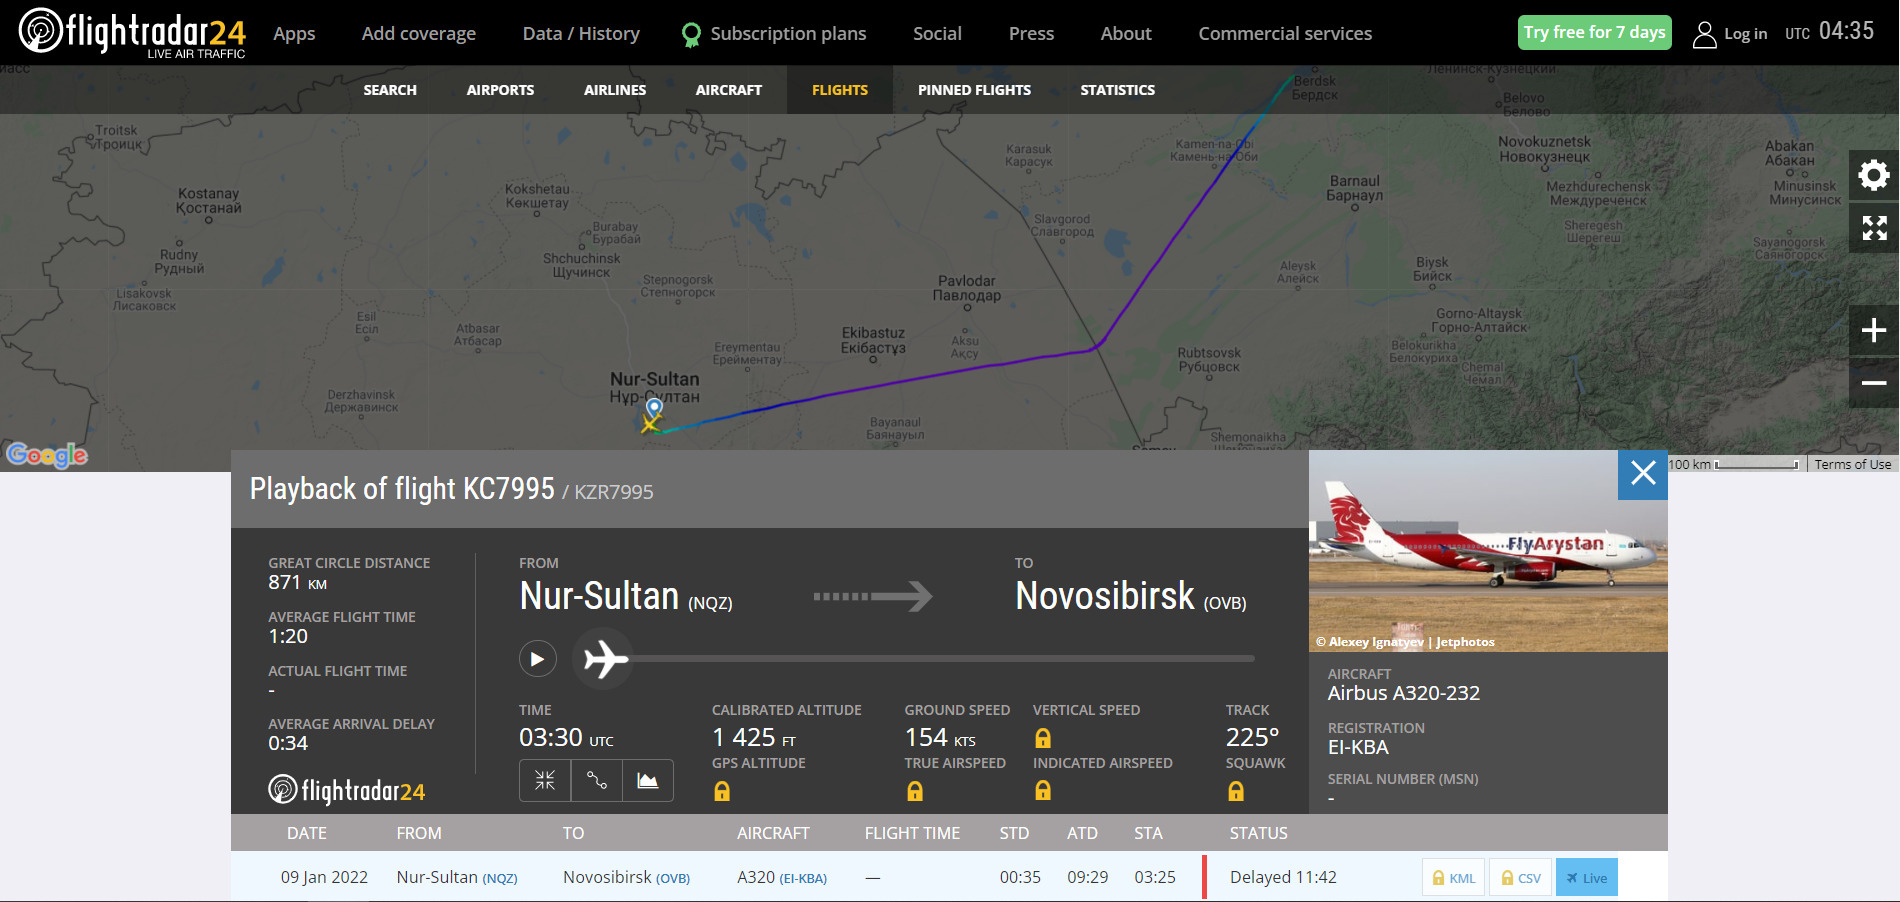 Вылет из Новосибирска запланирован на 12:40, но самолет до сих пор находится в Казахстане